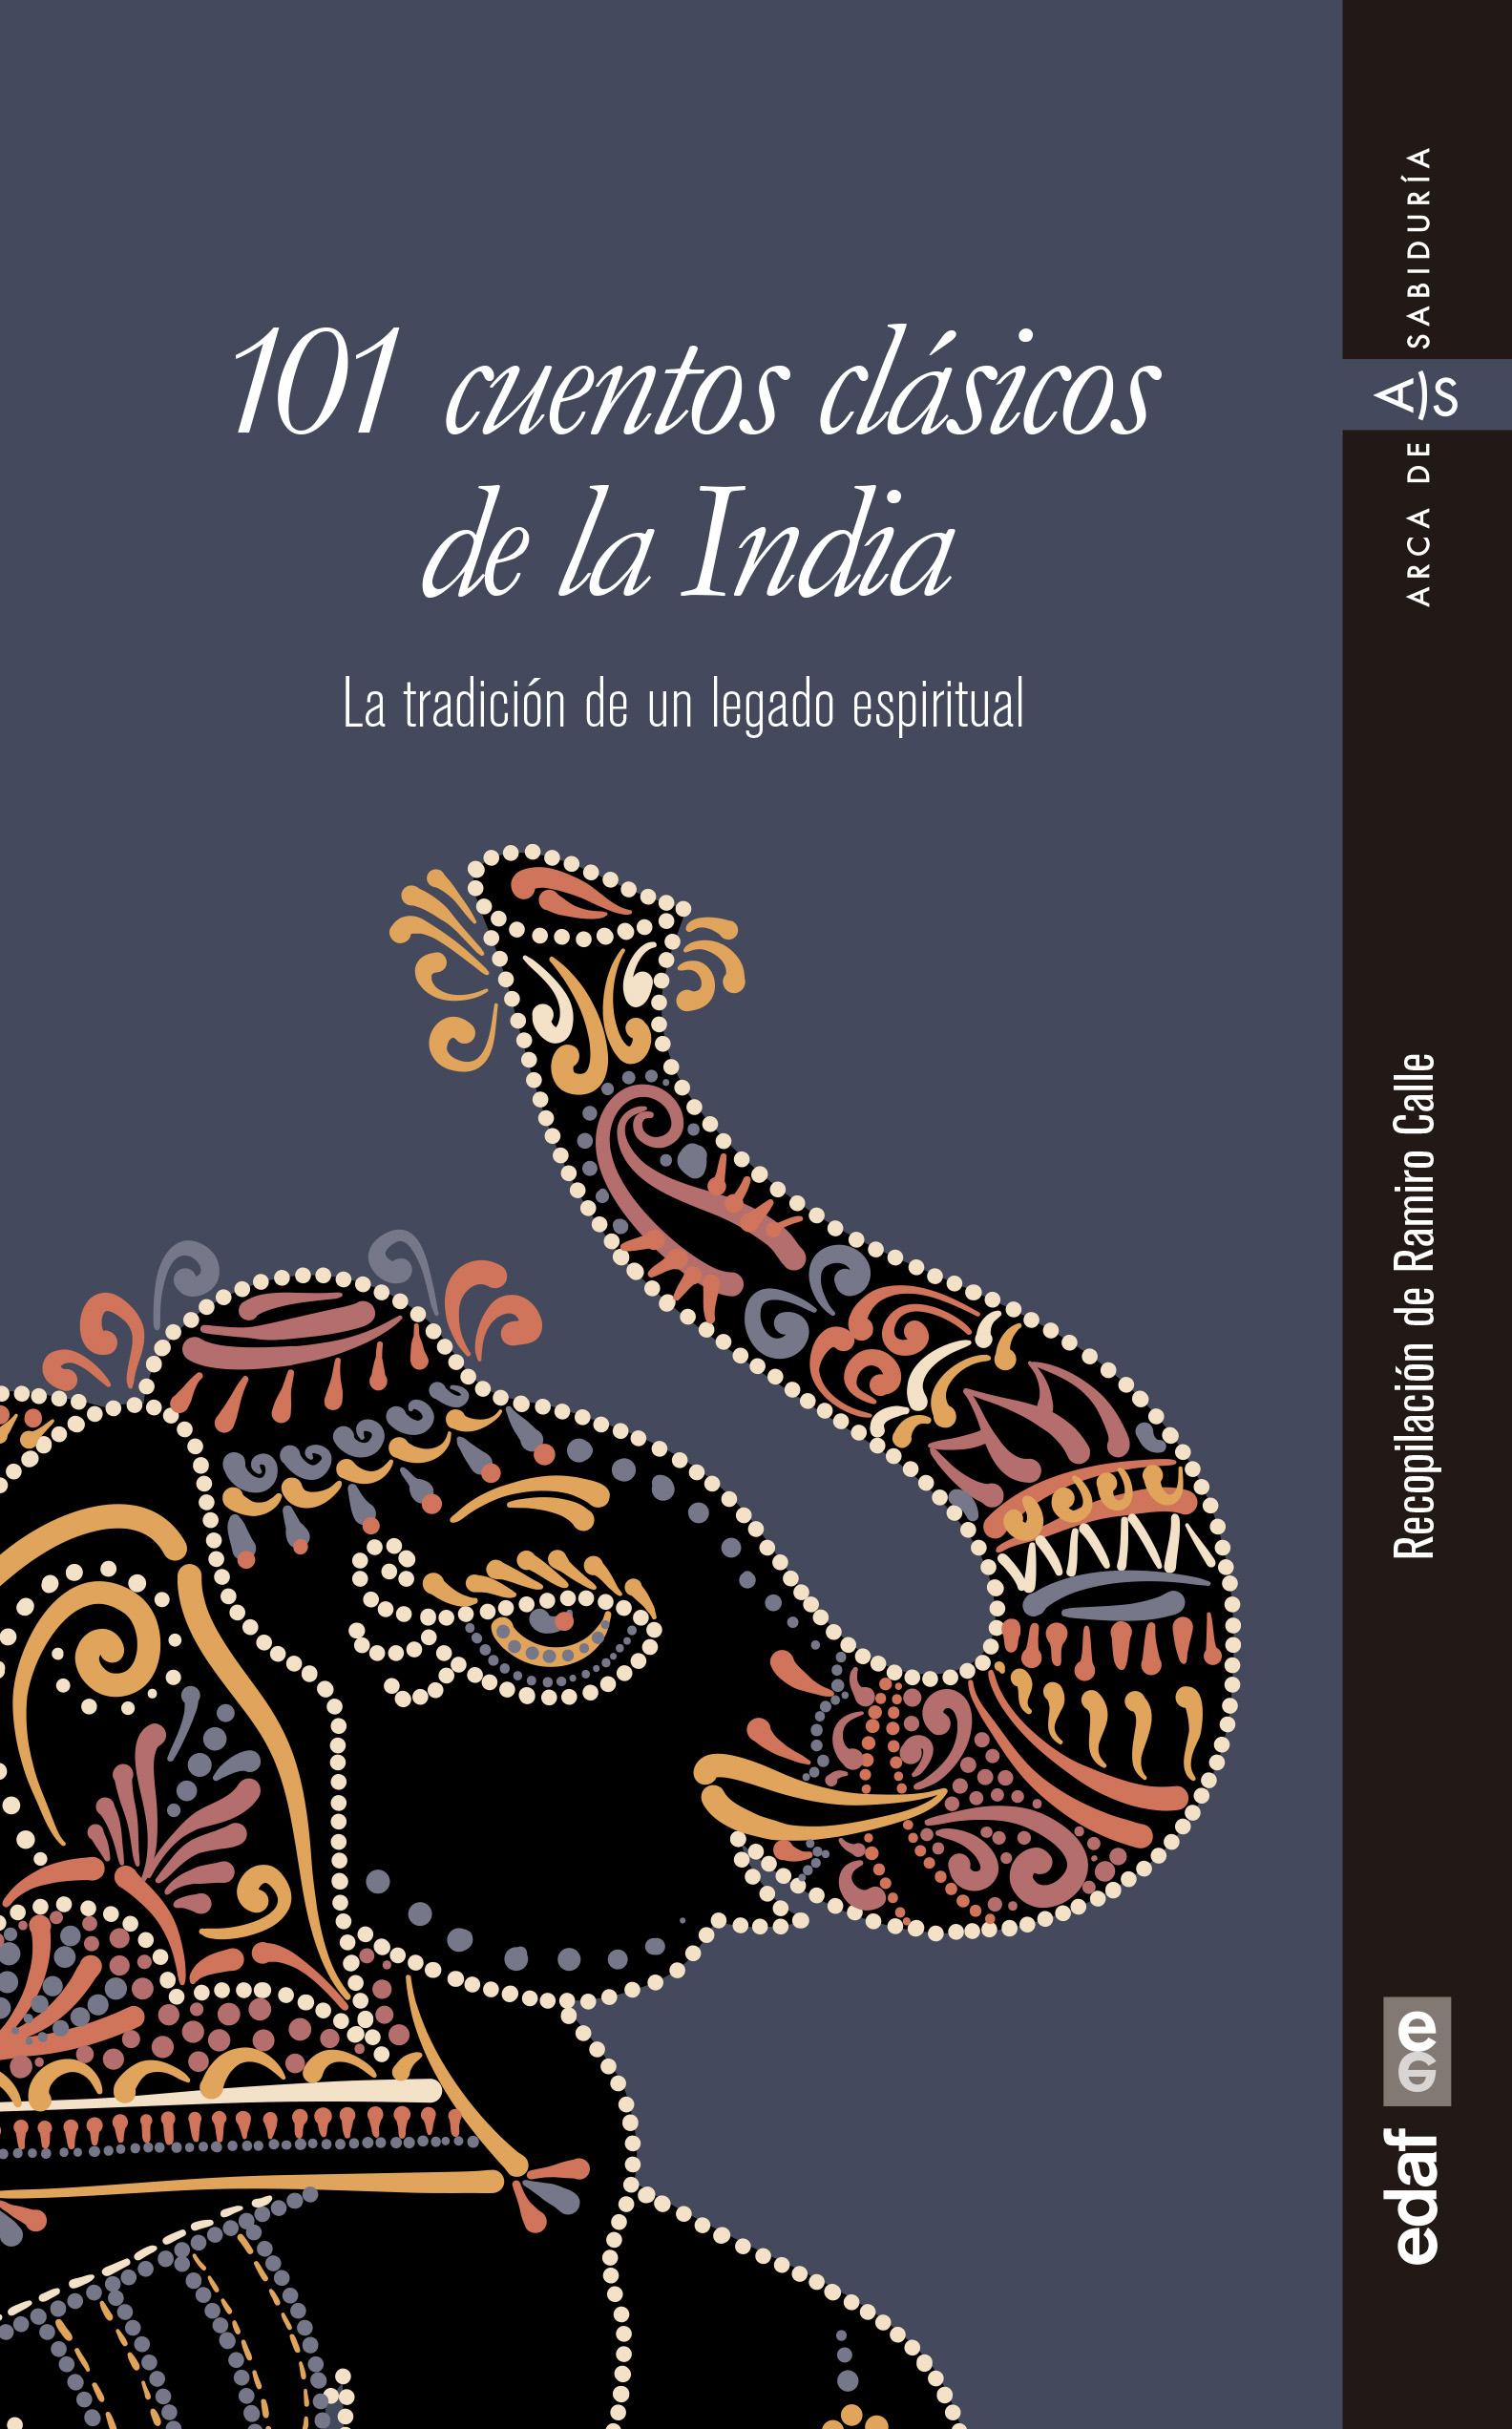 101 cuentos clásicos de la India «La tradición de un legado espiritual» (9788441439320)